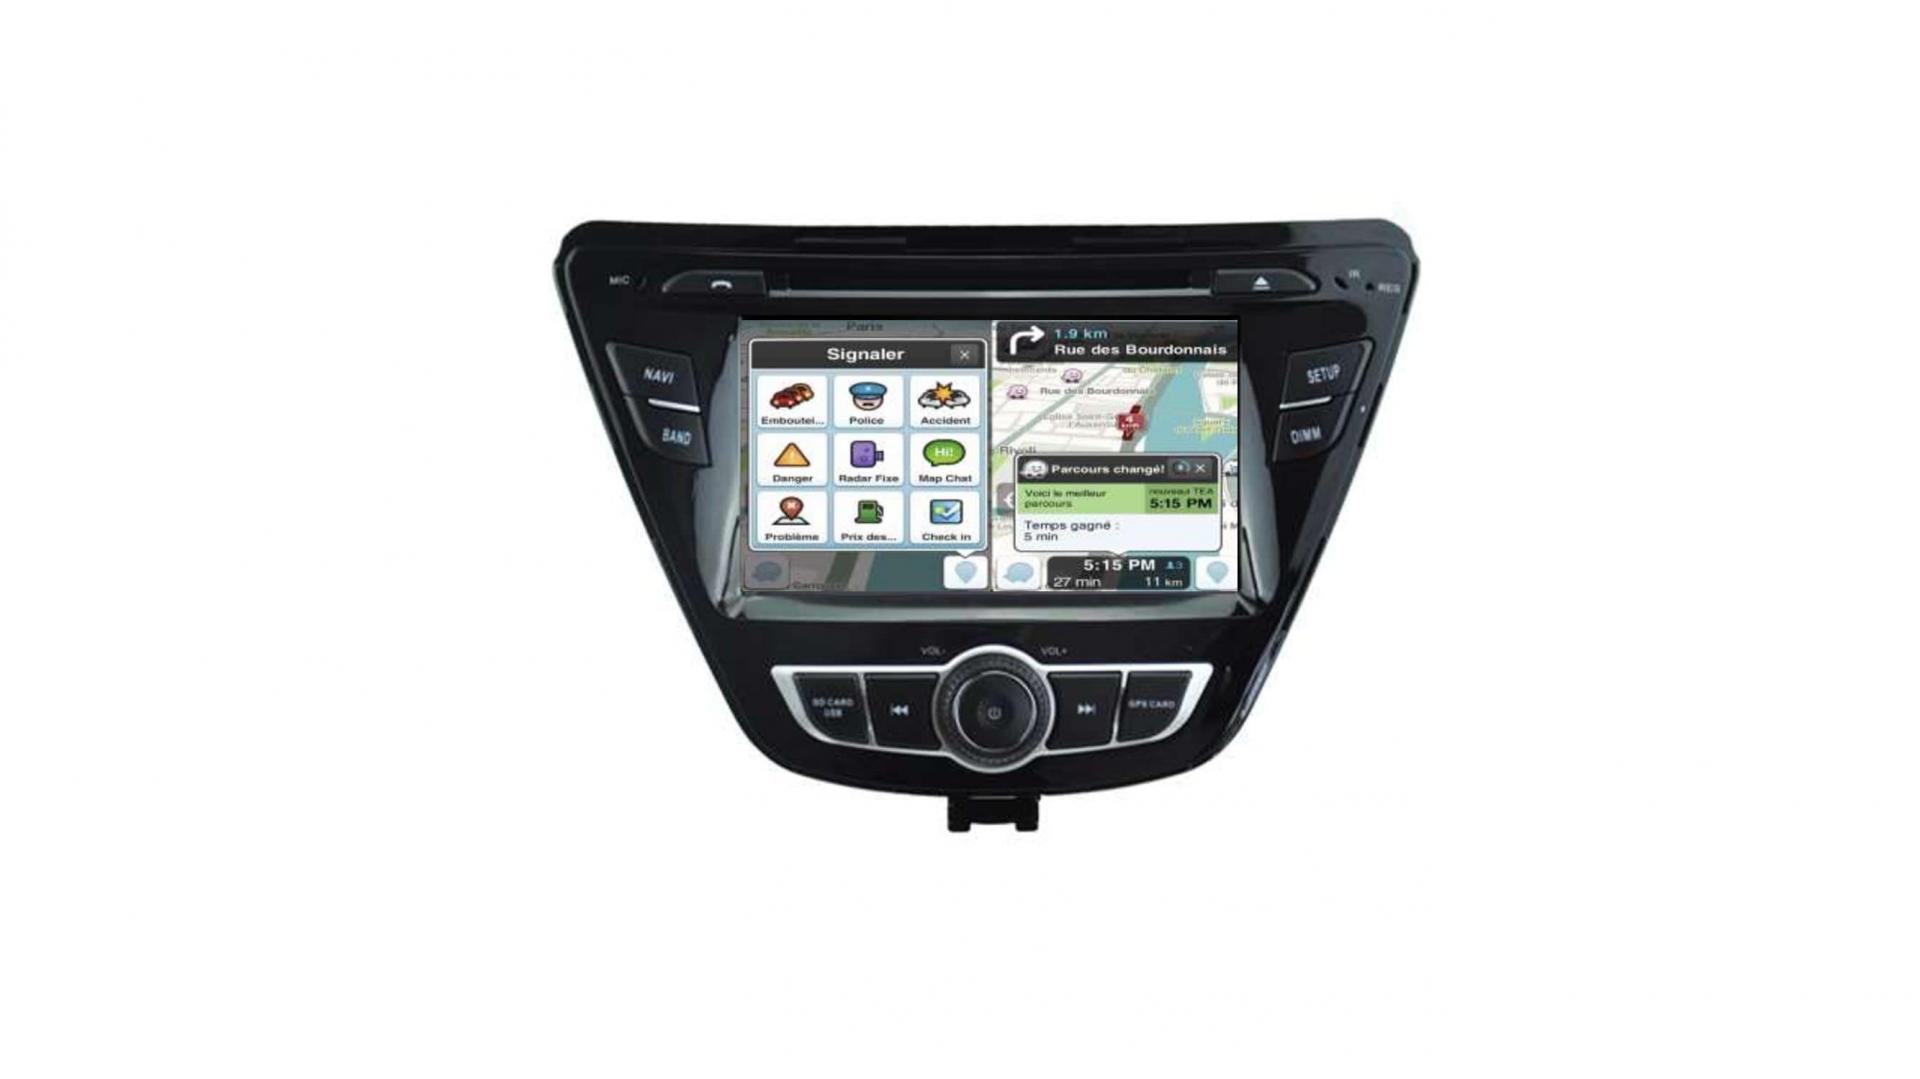 Autoradio androi d auto carplay gps bluetooth hyundai elantra avante 2014 2015 4